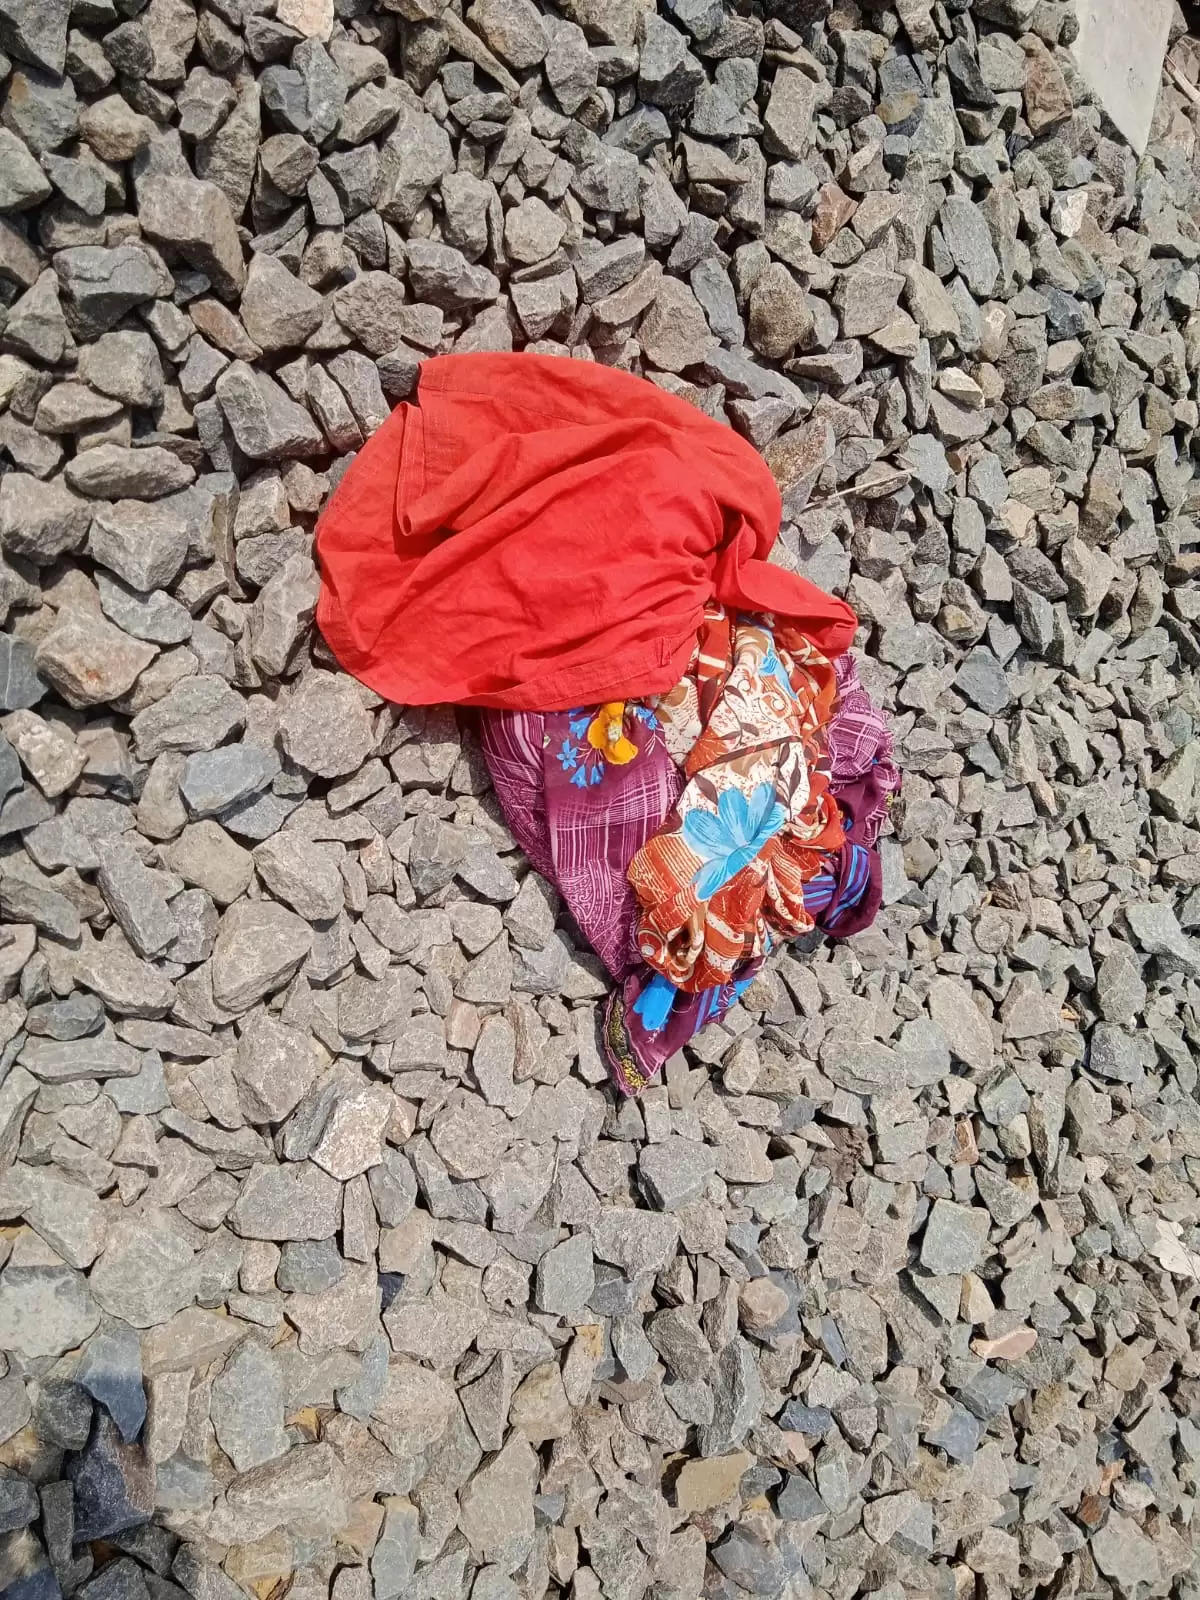 अनूपपुर: ट्रेन से टकराने पर अज्ञात वृद्ध महिला की मौत